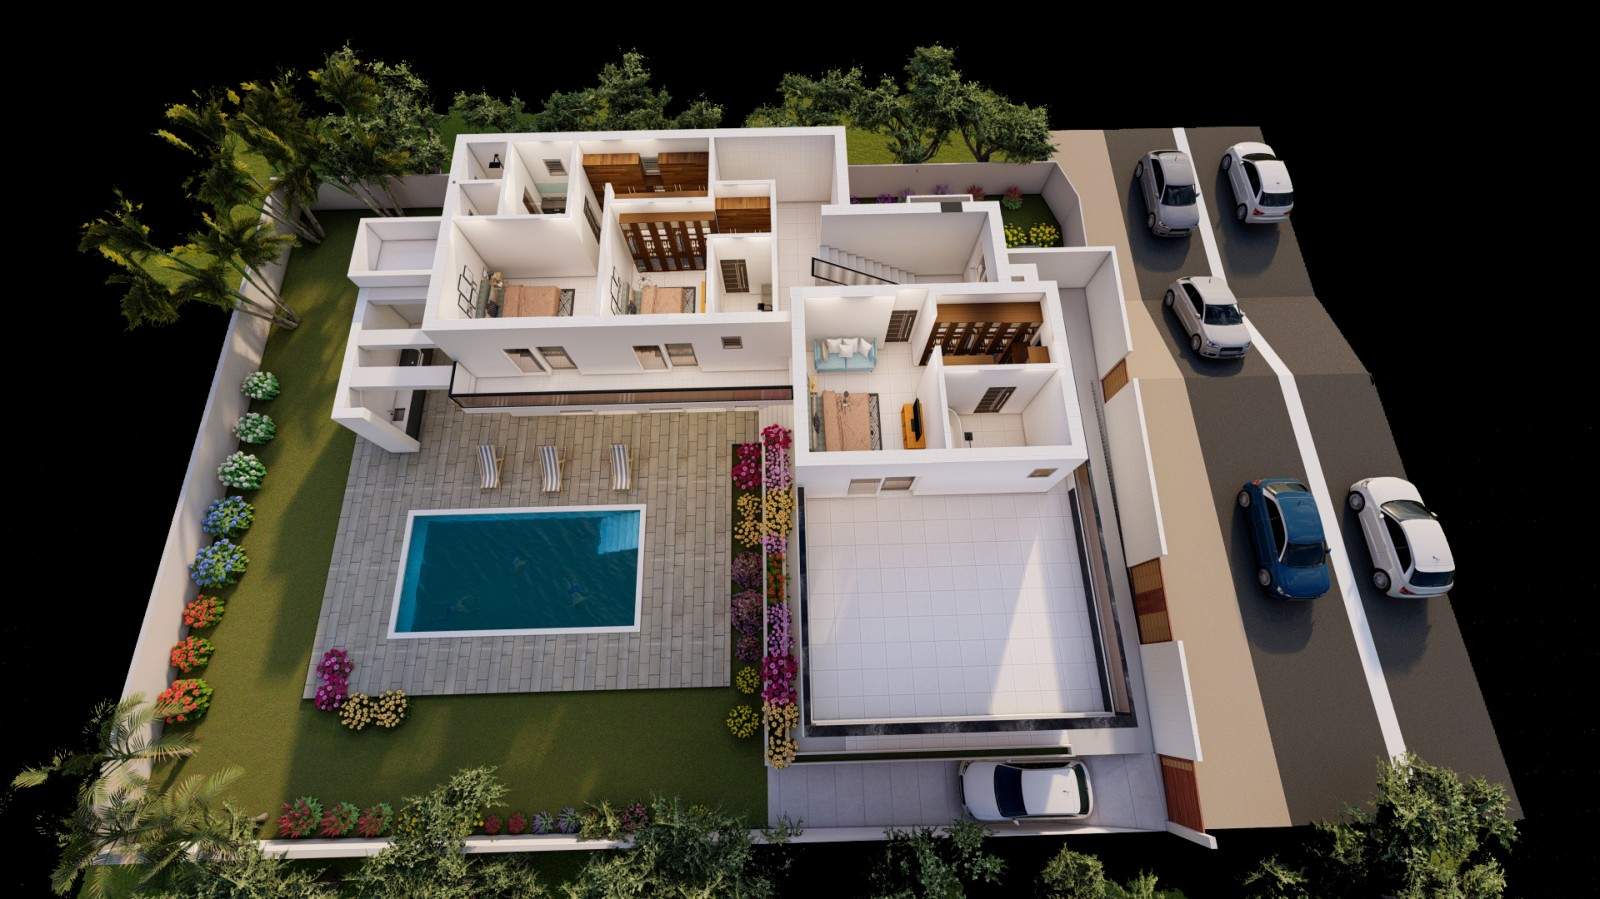 Moradia de 4 quartos, piscina, para venda, Porto de Mós, Lagos, Algarve_211034